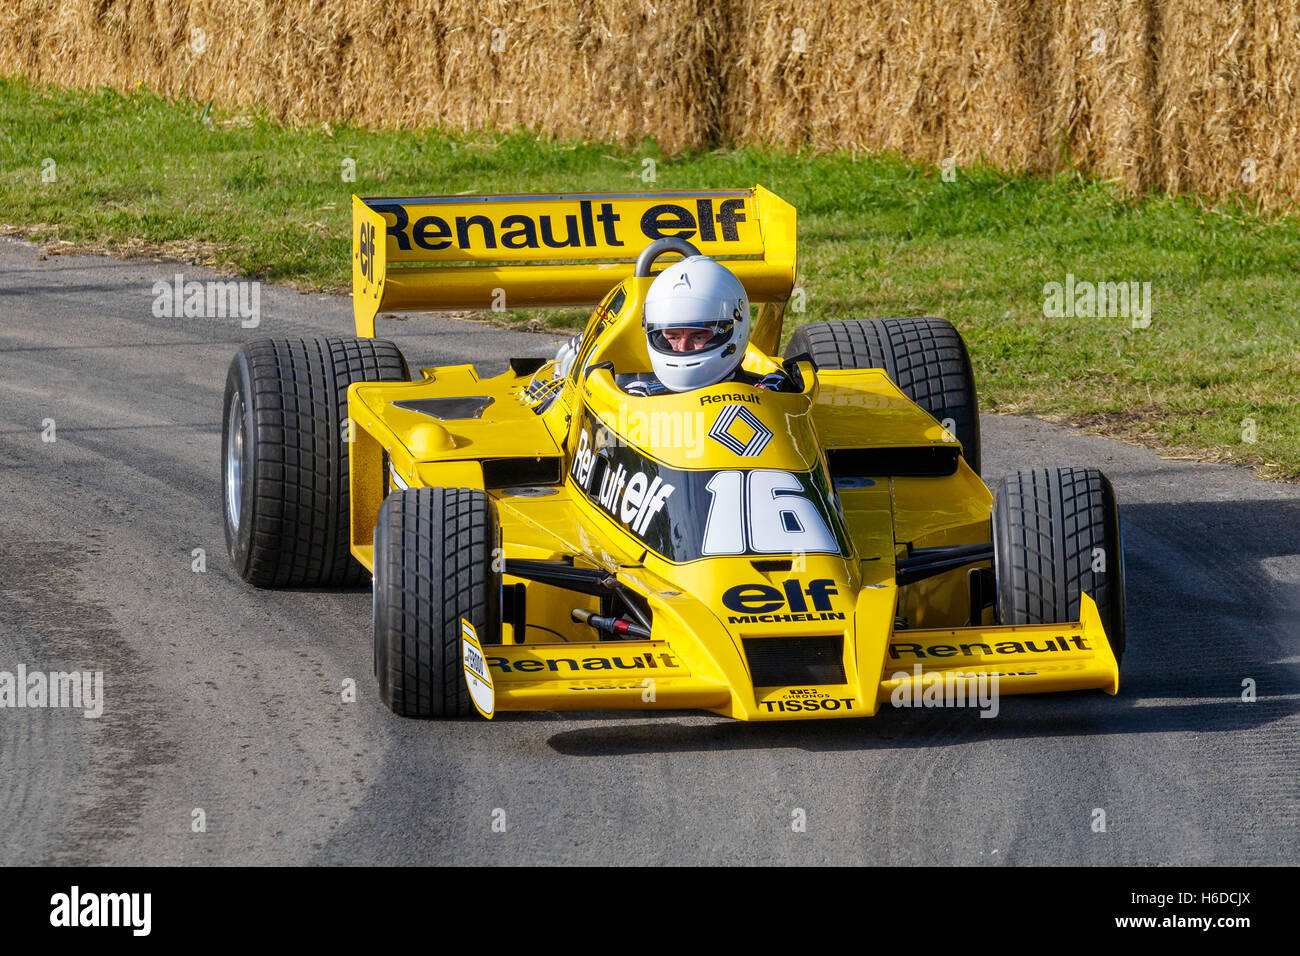 1977 Renault R01 F1 avec chauffeur René Arnoux au Goodwood Festival of Speed 2016, Sussex, UK Banque D'Images